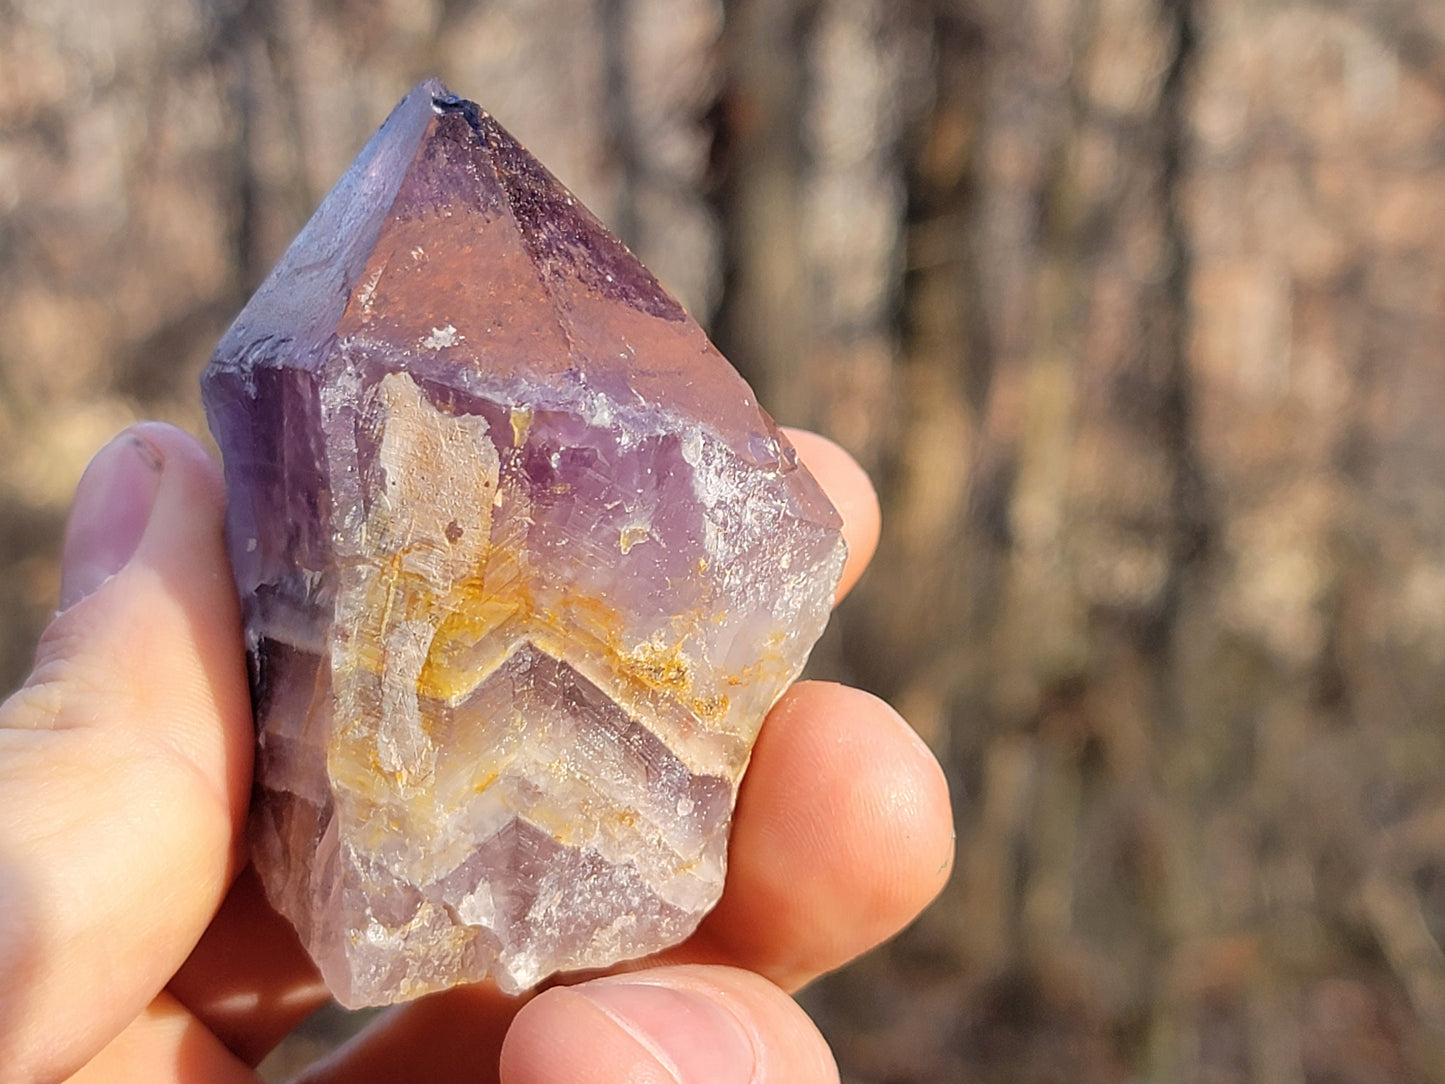 Raw Thunder Bay Amethyst || Raw Amethyst Crystal || Hematite Capped Amethyst